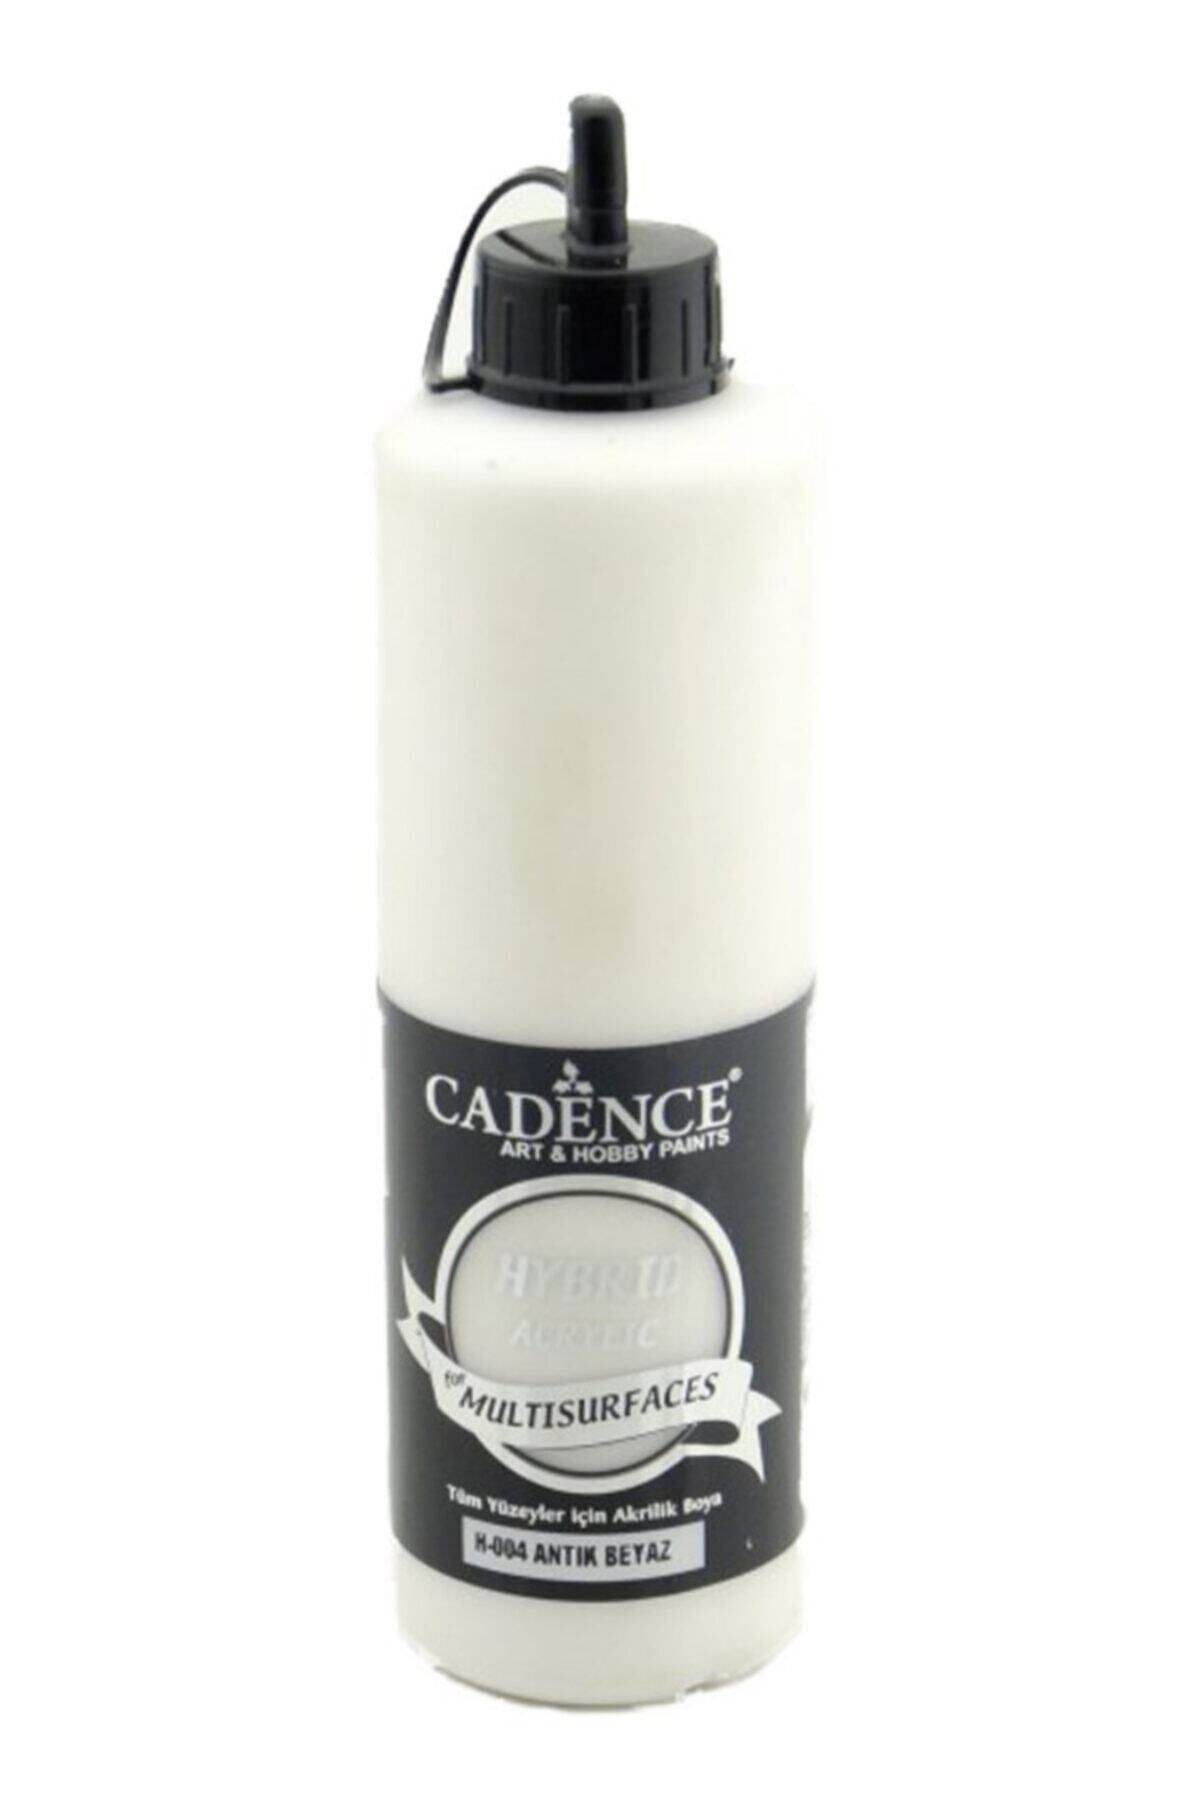 Cadence Boya Cadence Hibrit Multisurface Hybrid 500 ml . Antik Beyaz